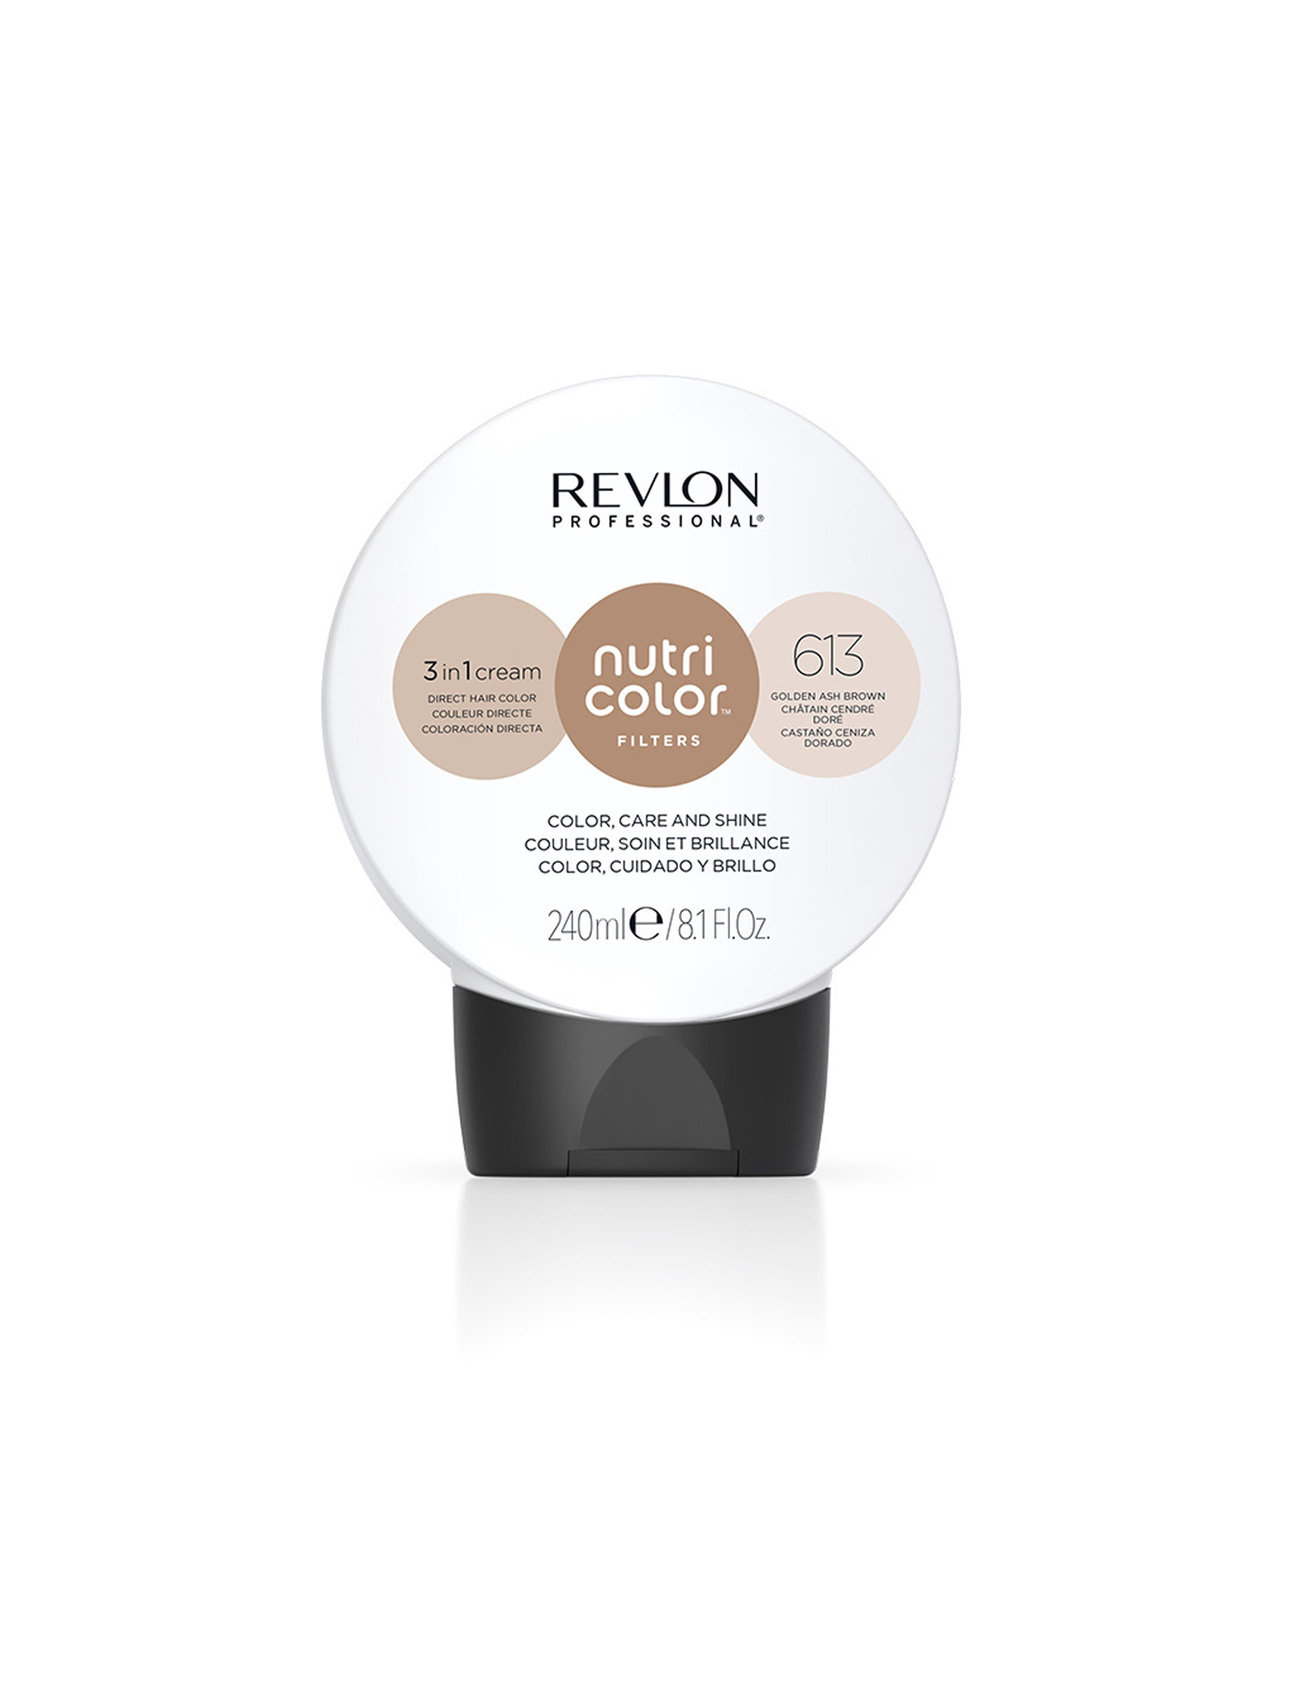 "Revlon Professional" "Nutri Color Filters 613 Beauty Women Hair Care Treatments Nude Revlon